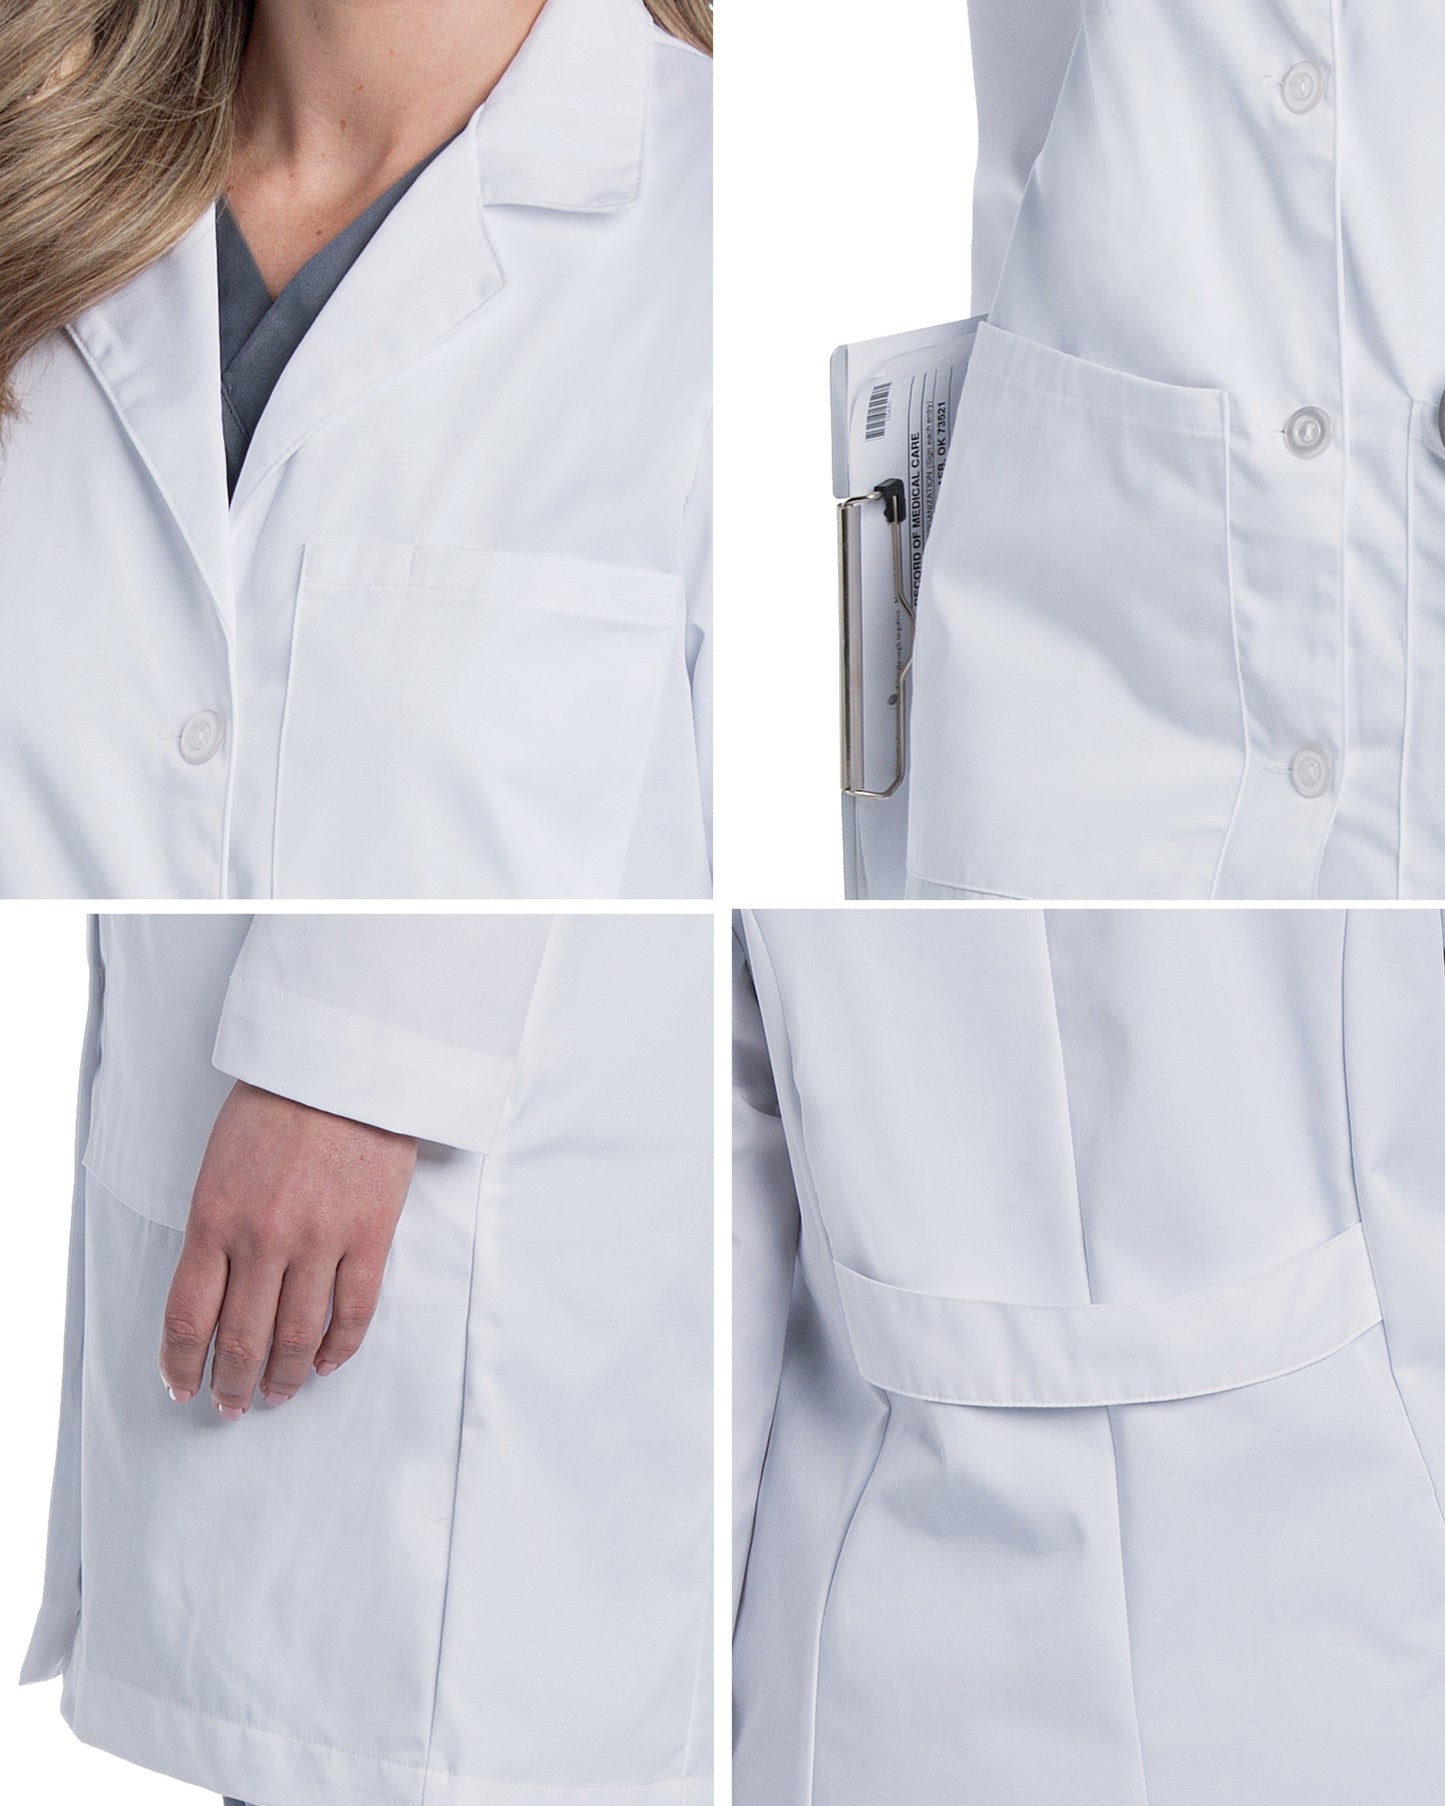 Women's 5-Pocket Full-Length Lab Coat